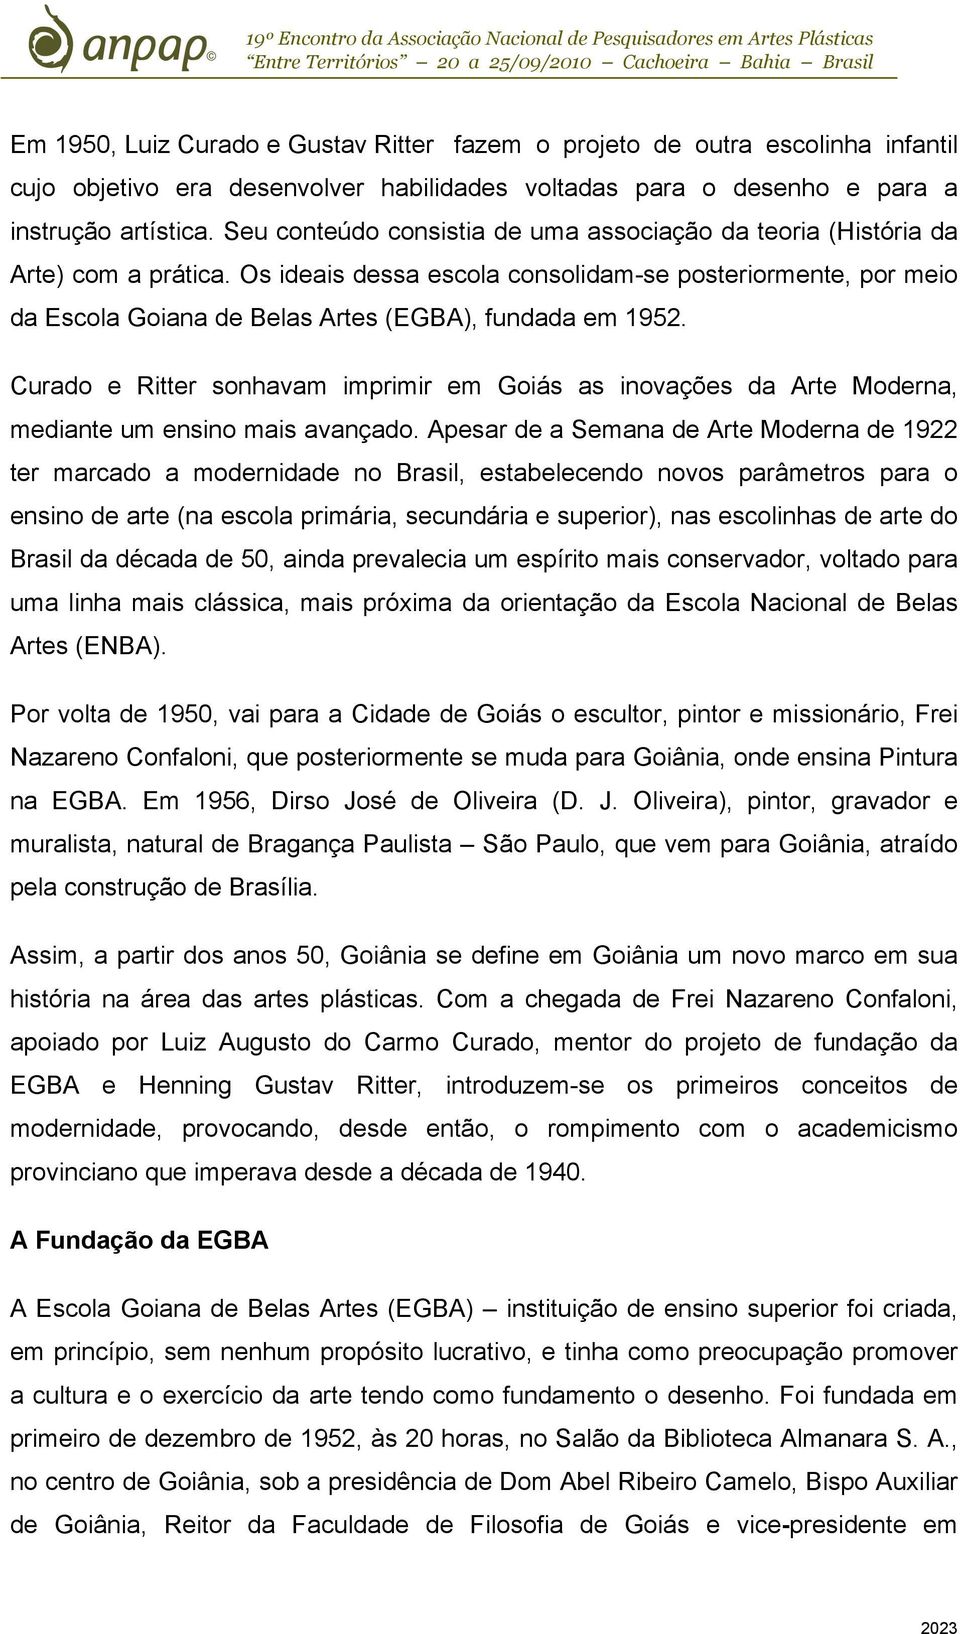 Os ideais dessa escola consolidam-se posteriormente, por meio da Escola Goiana de Belas Artes (EGBA), fundada em 1952.